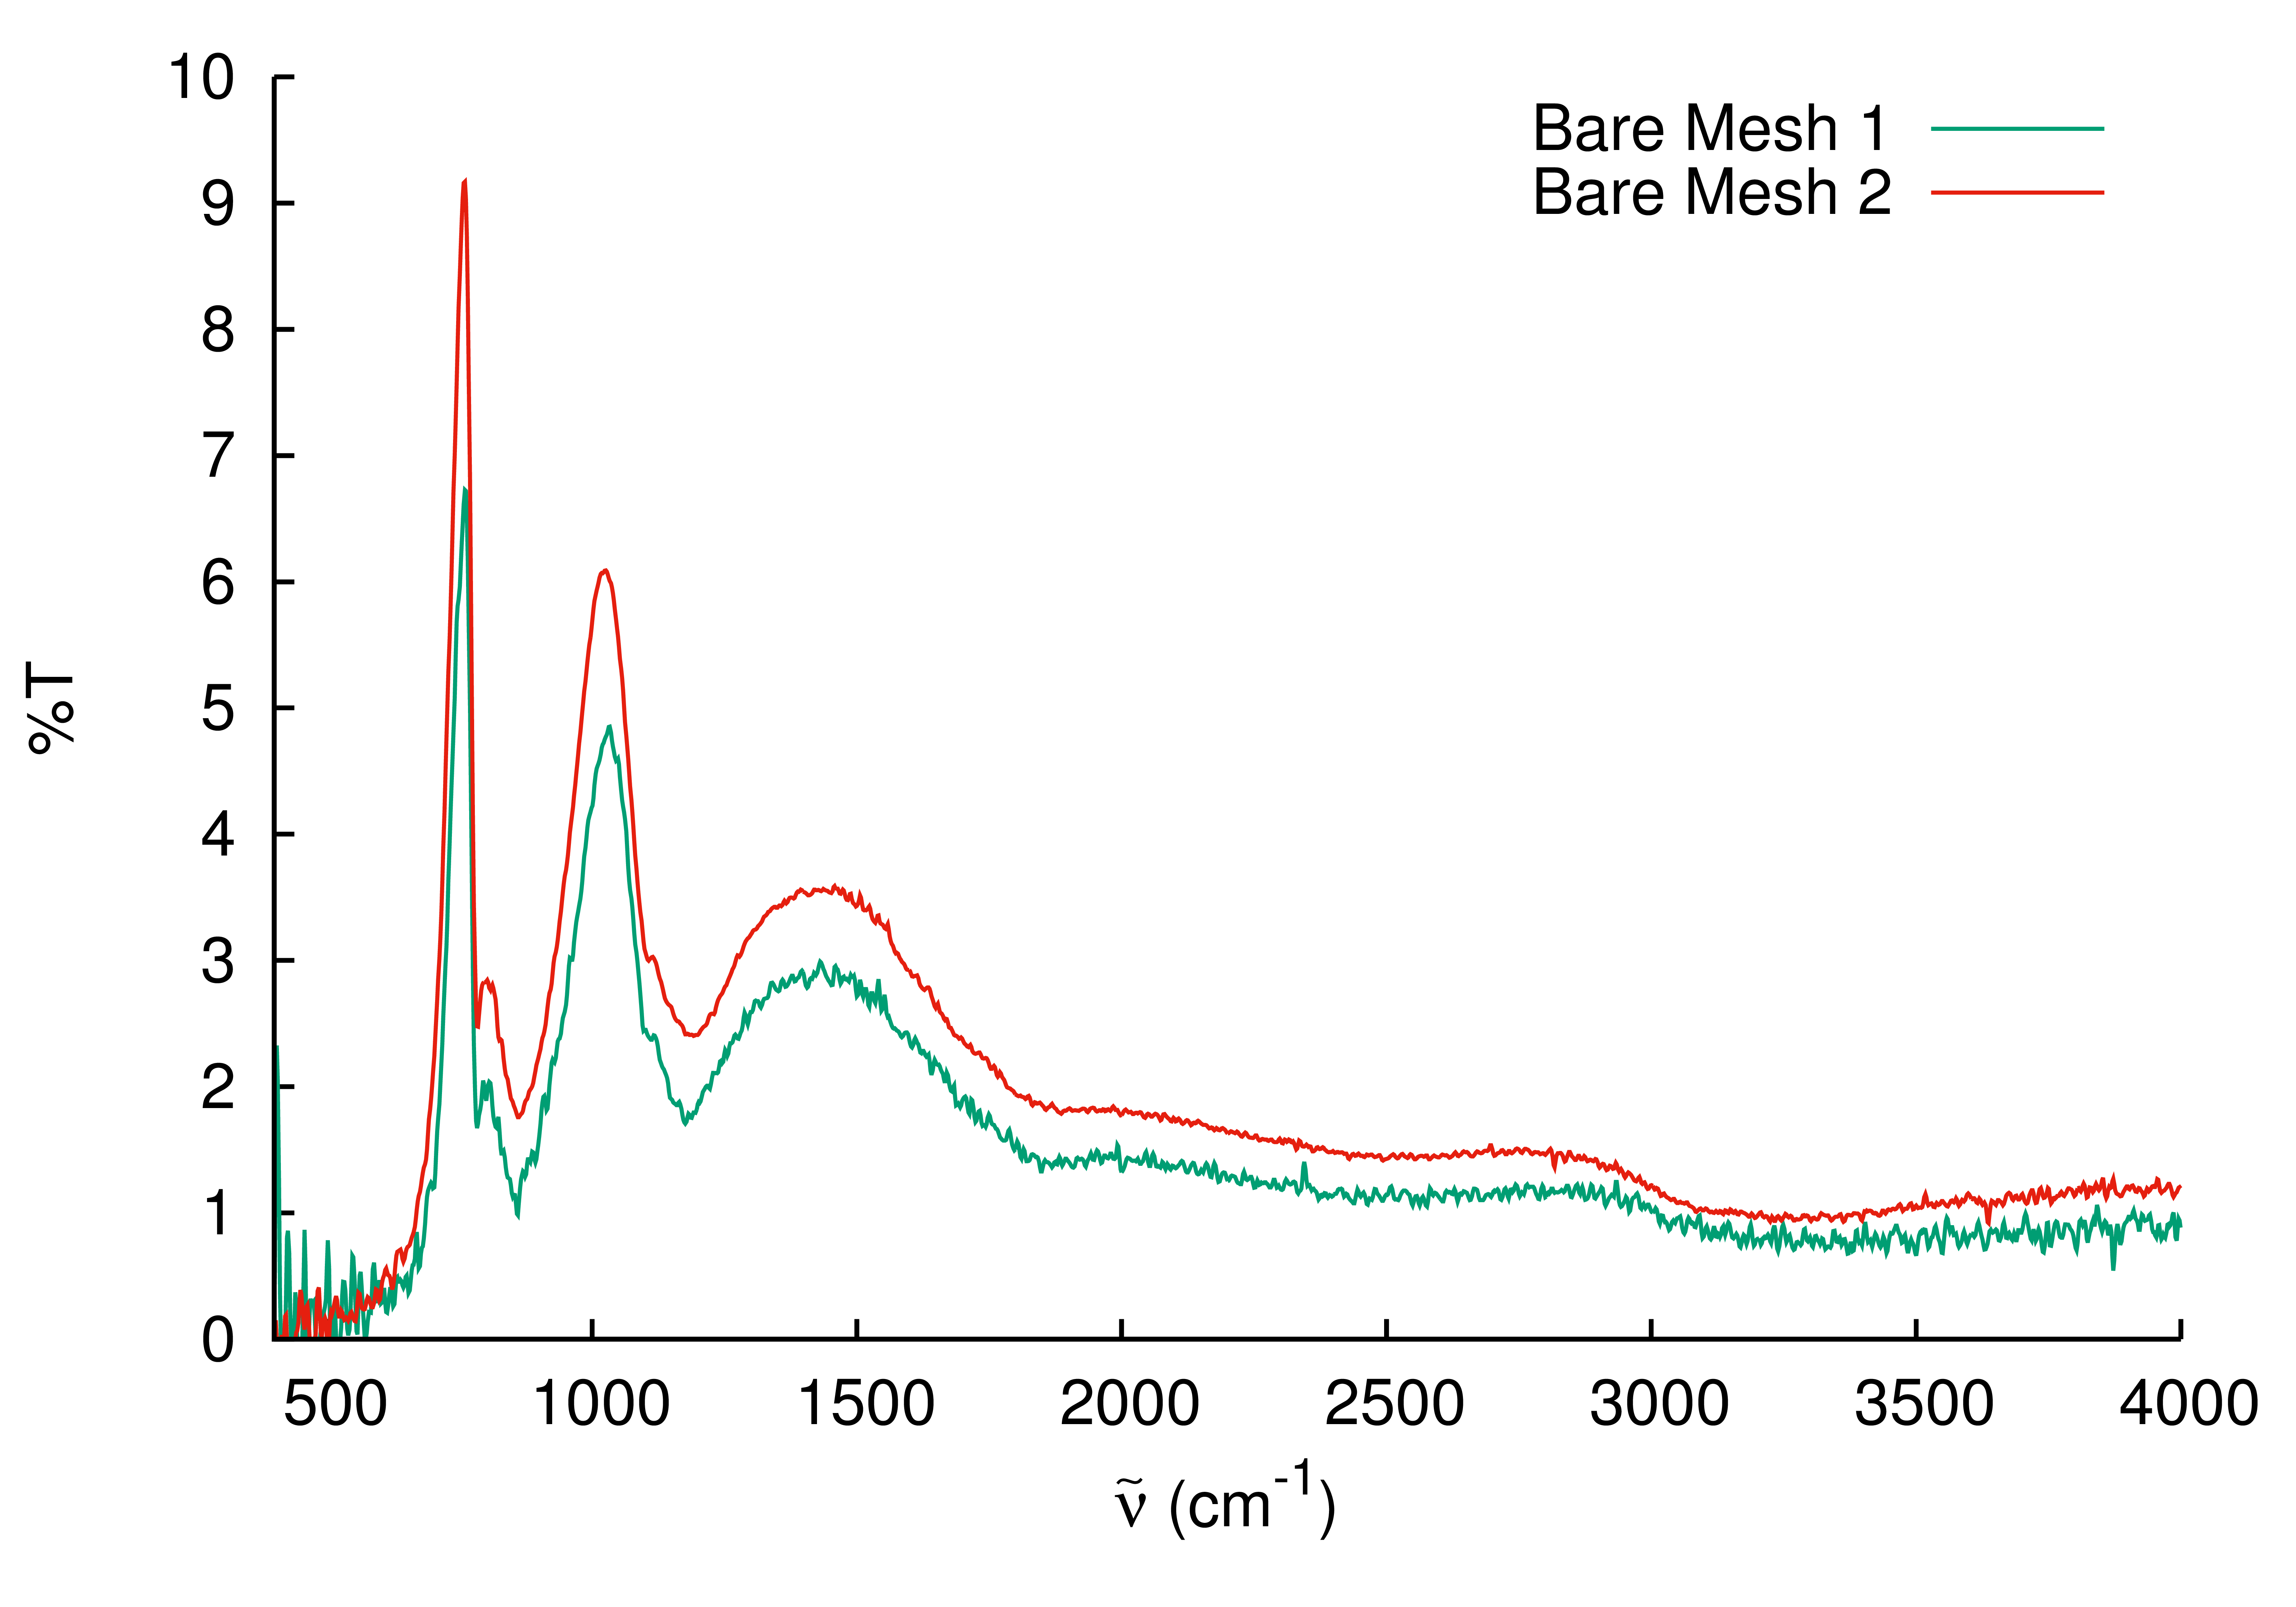 Comparison of bare mesh spectra.